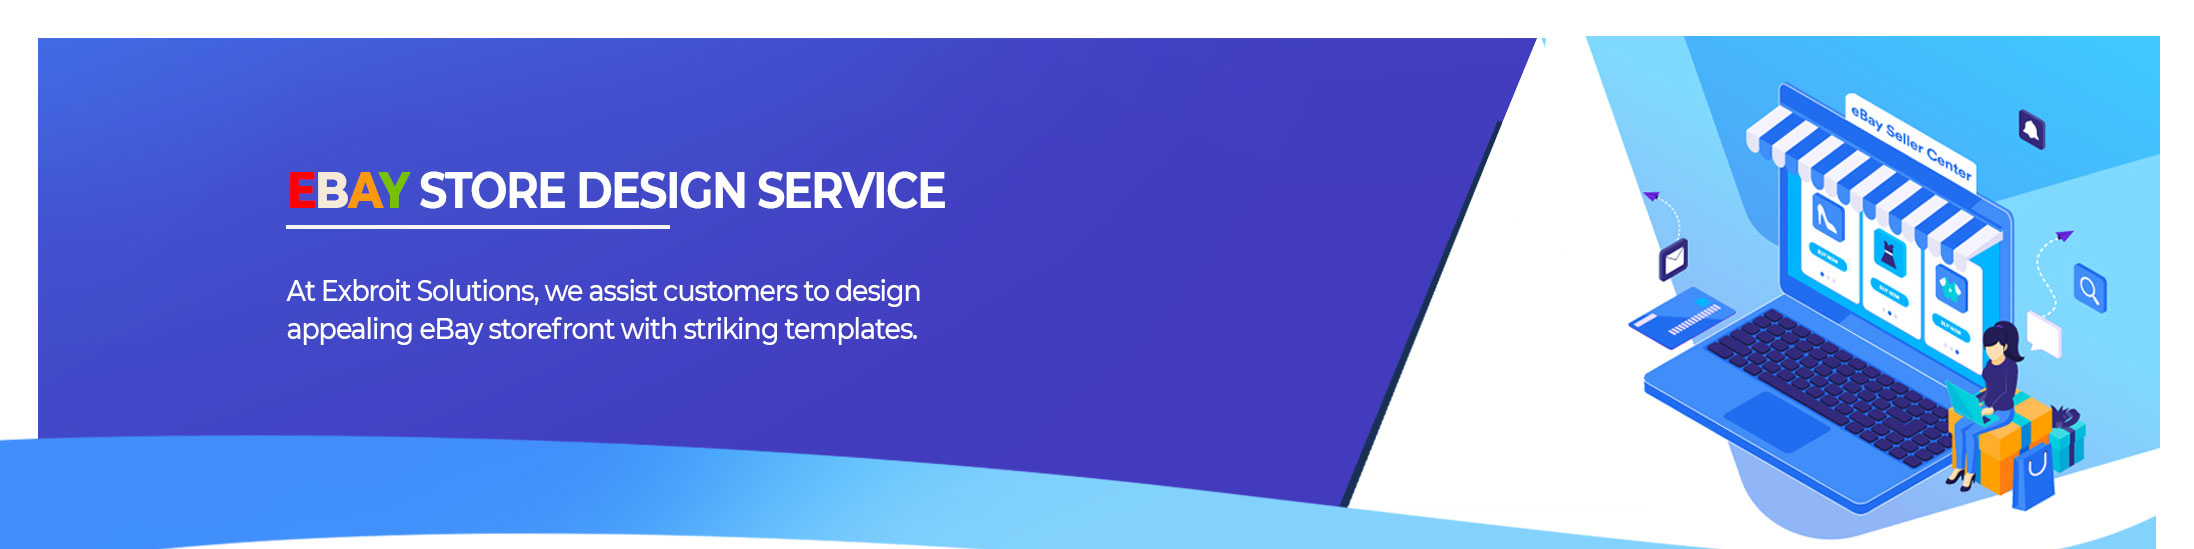 Ebay Store Design Service